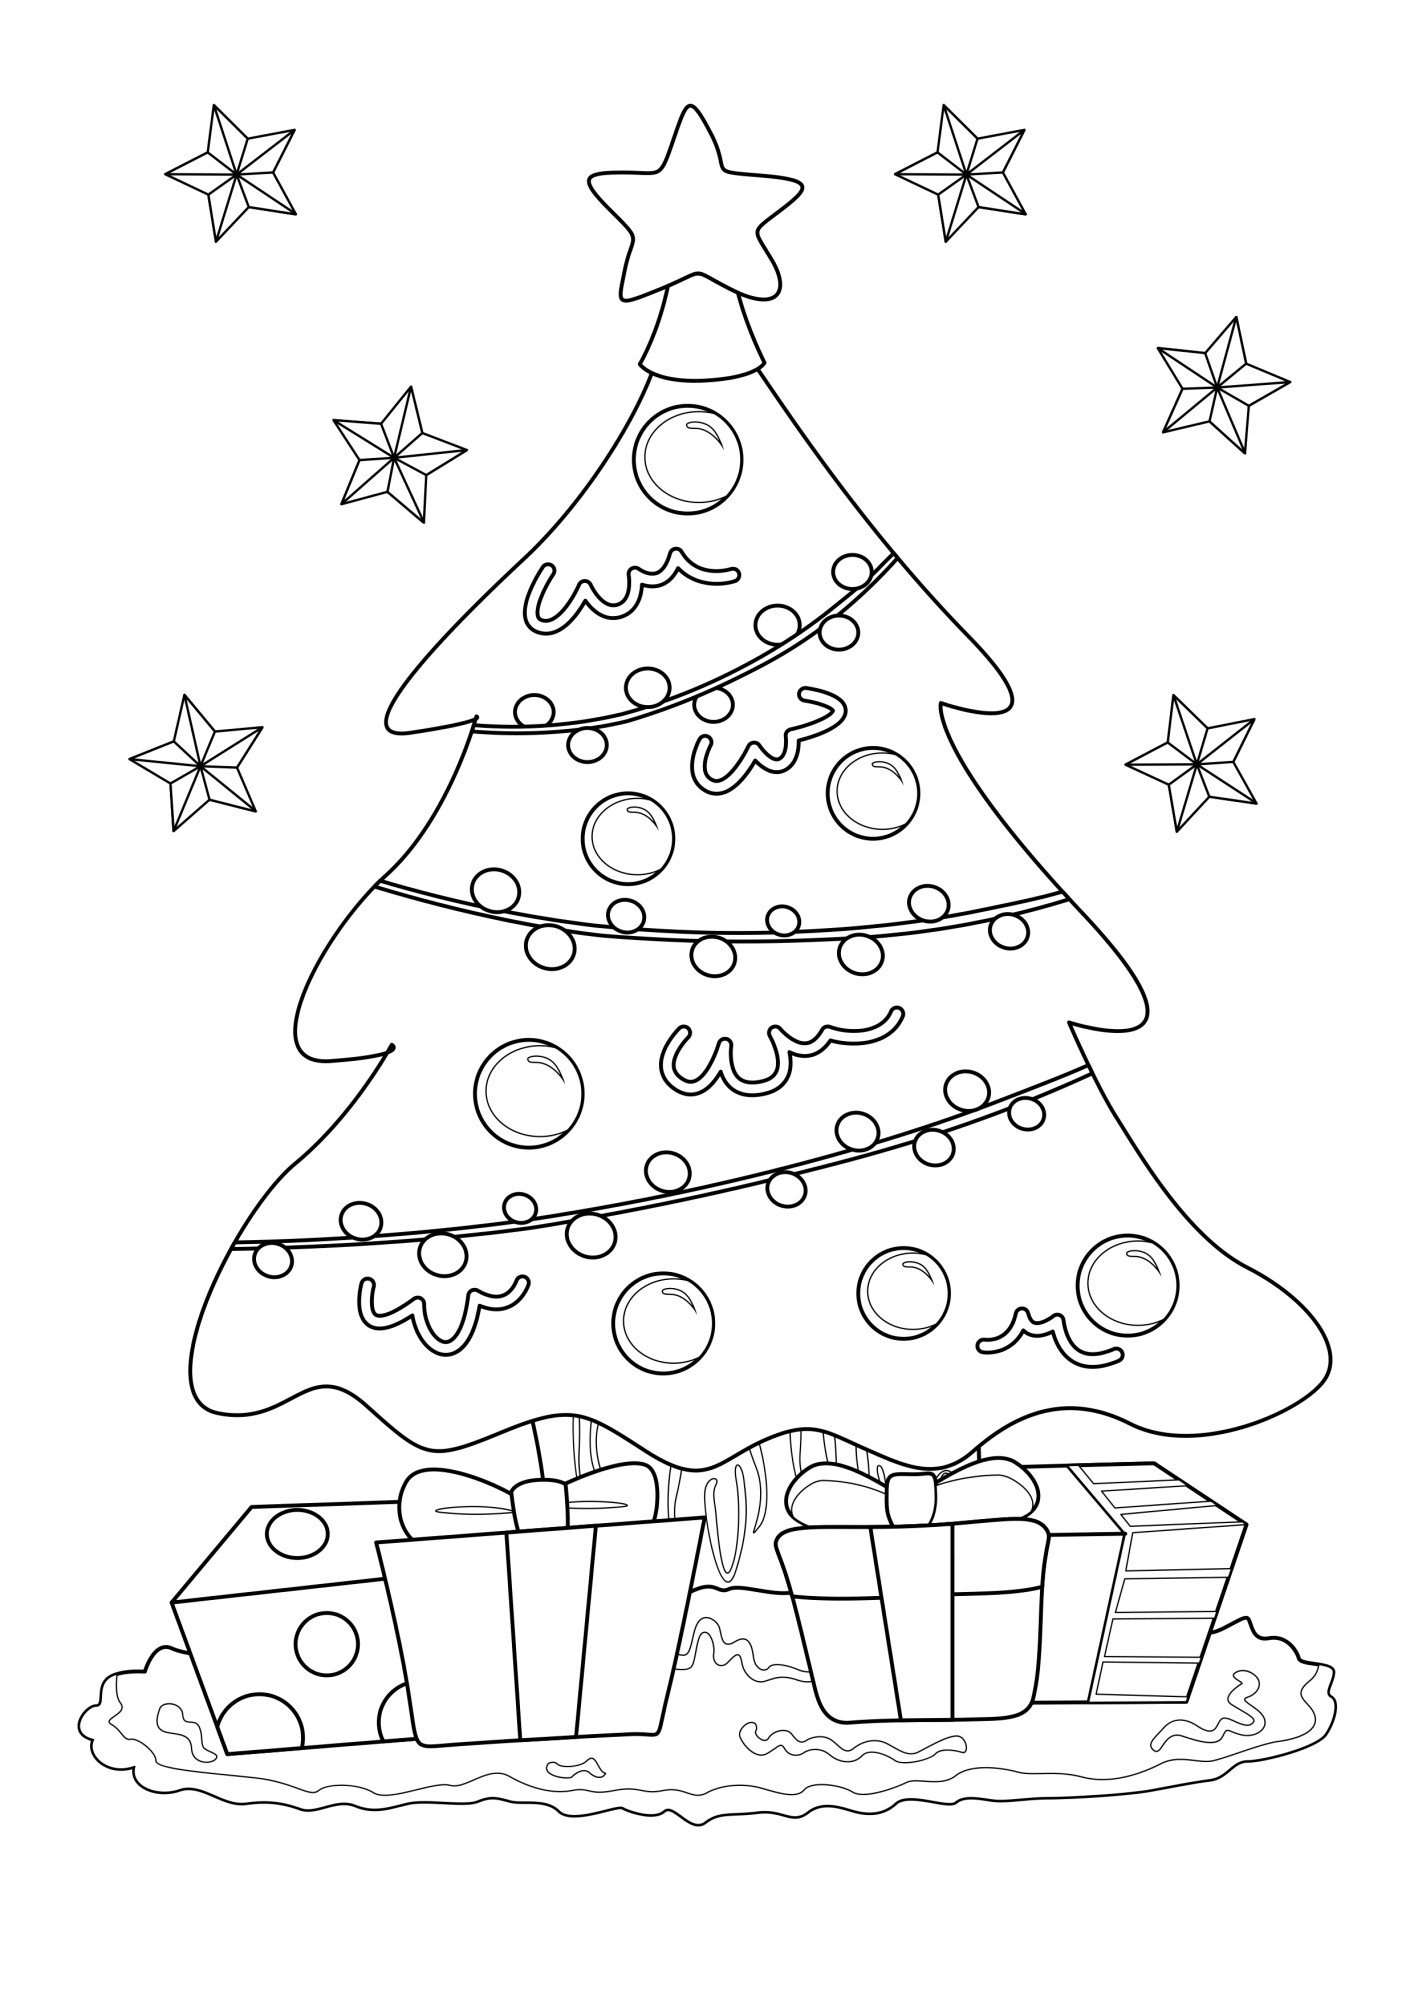 Раскраска для детей: праздничная новогодняя ёлка с подарками